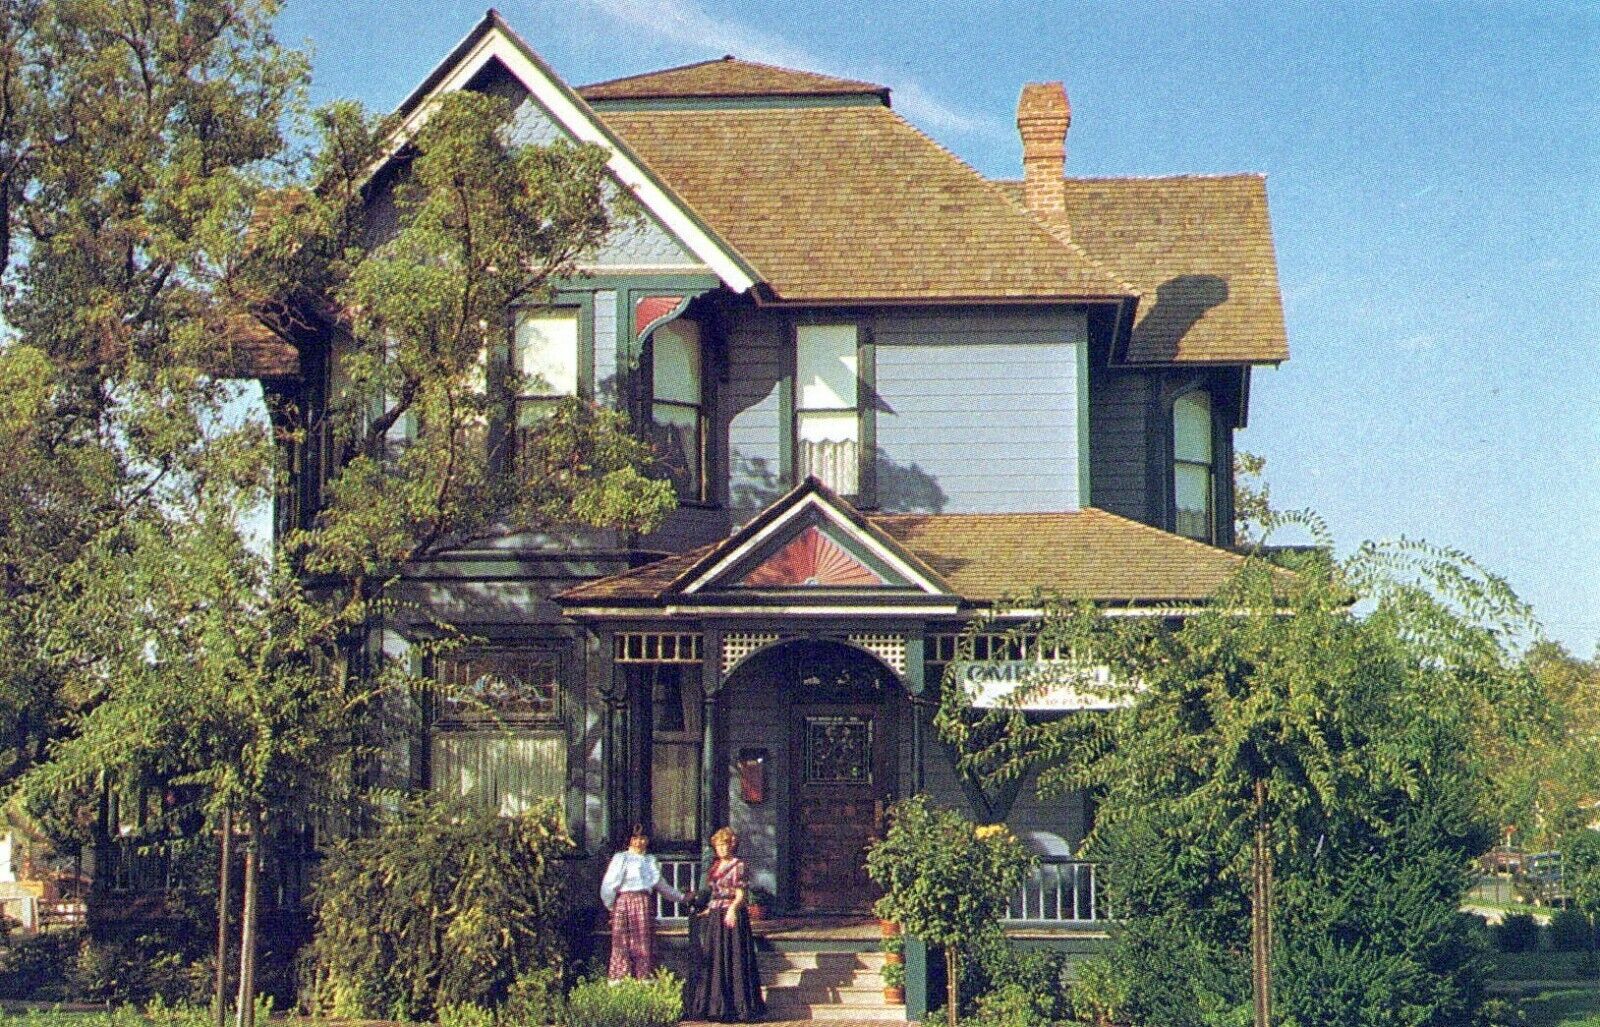 Hanford Victorian Inn Hanford California Chrome Vintage Postcard